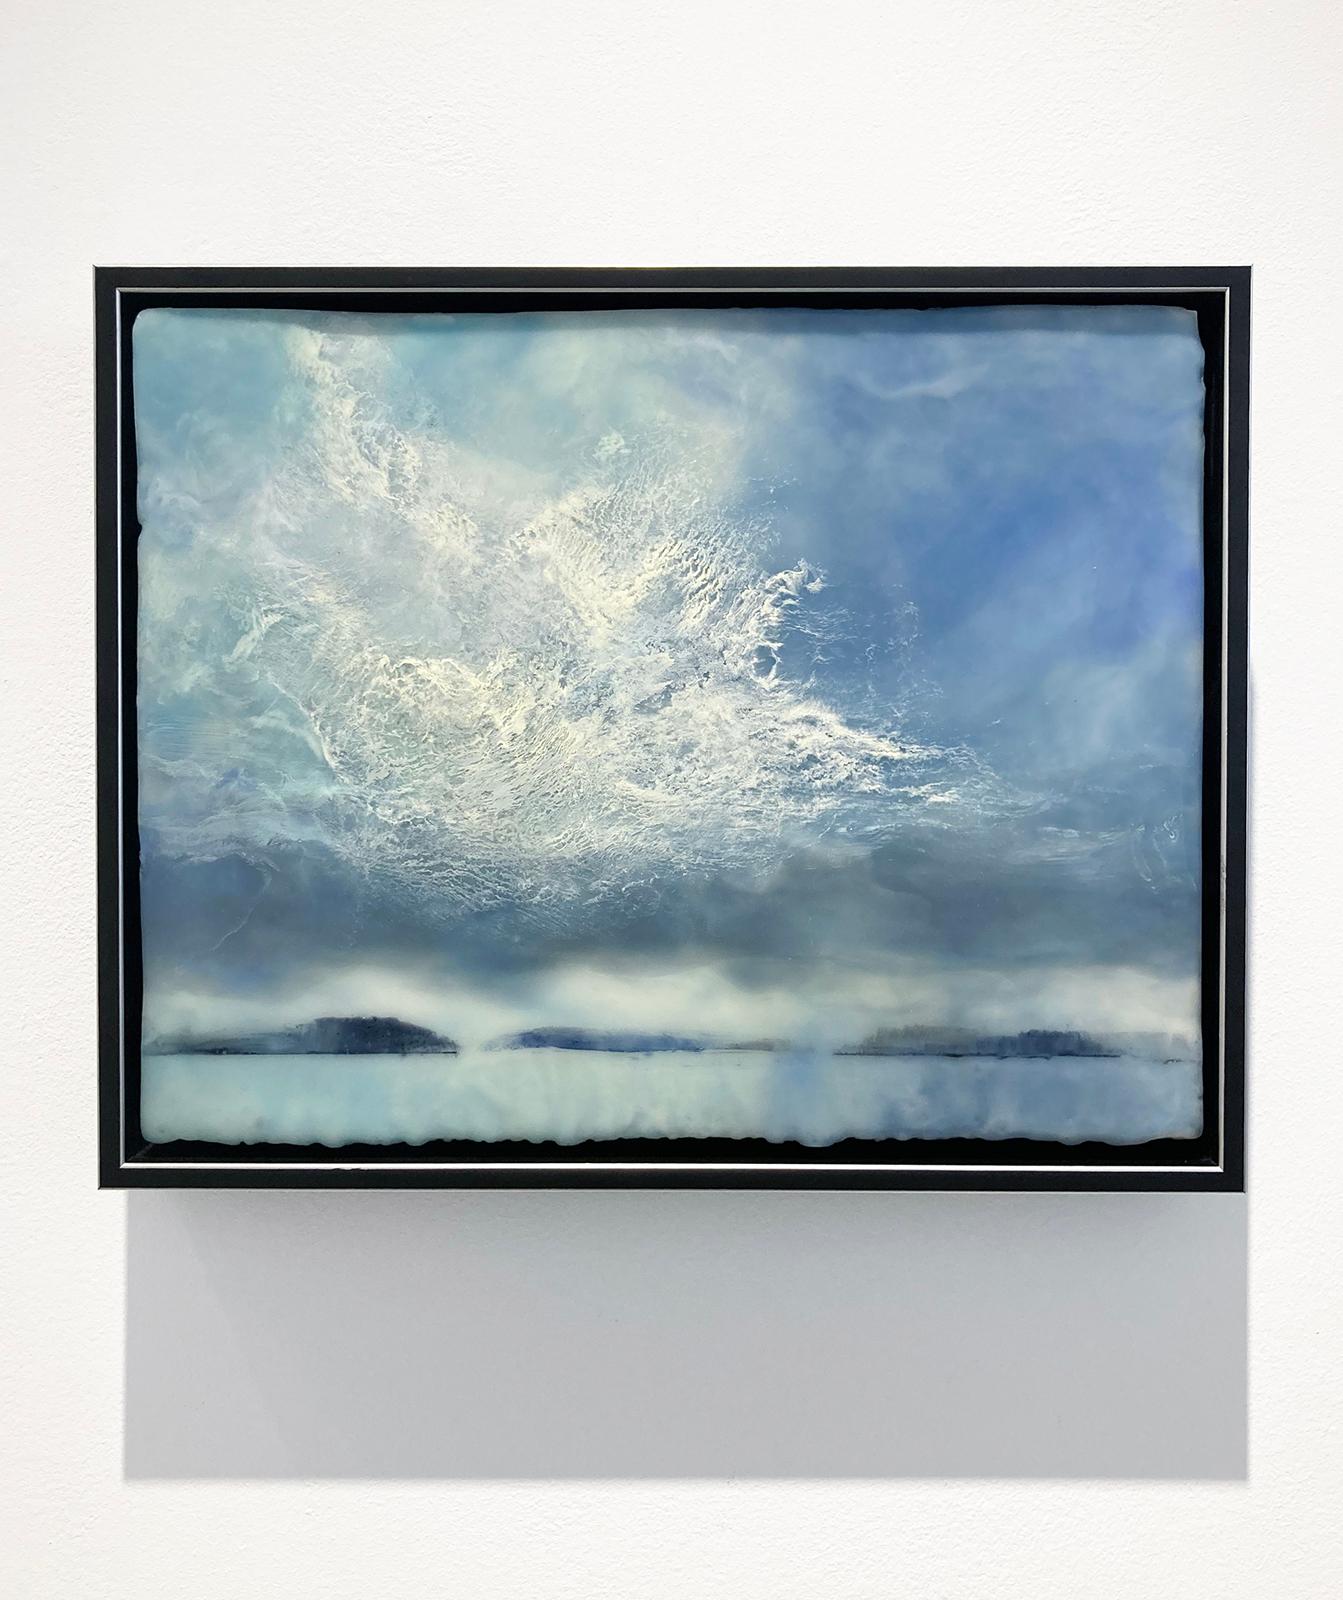 Peinture de paysage d'hiver de style impressionniste représentant des nuages blancs spectaculaires dans un ciel bleu au-dessus d'une campagne sereine.
